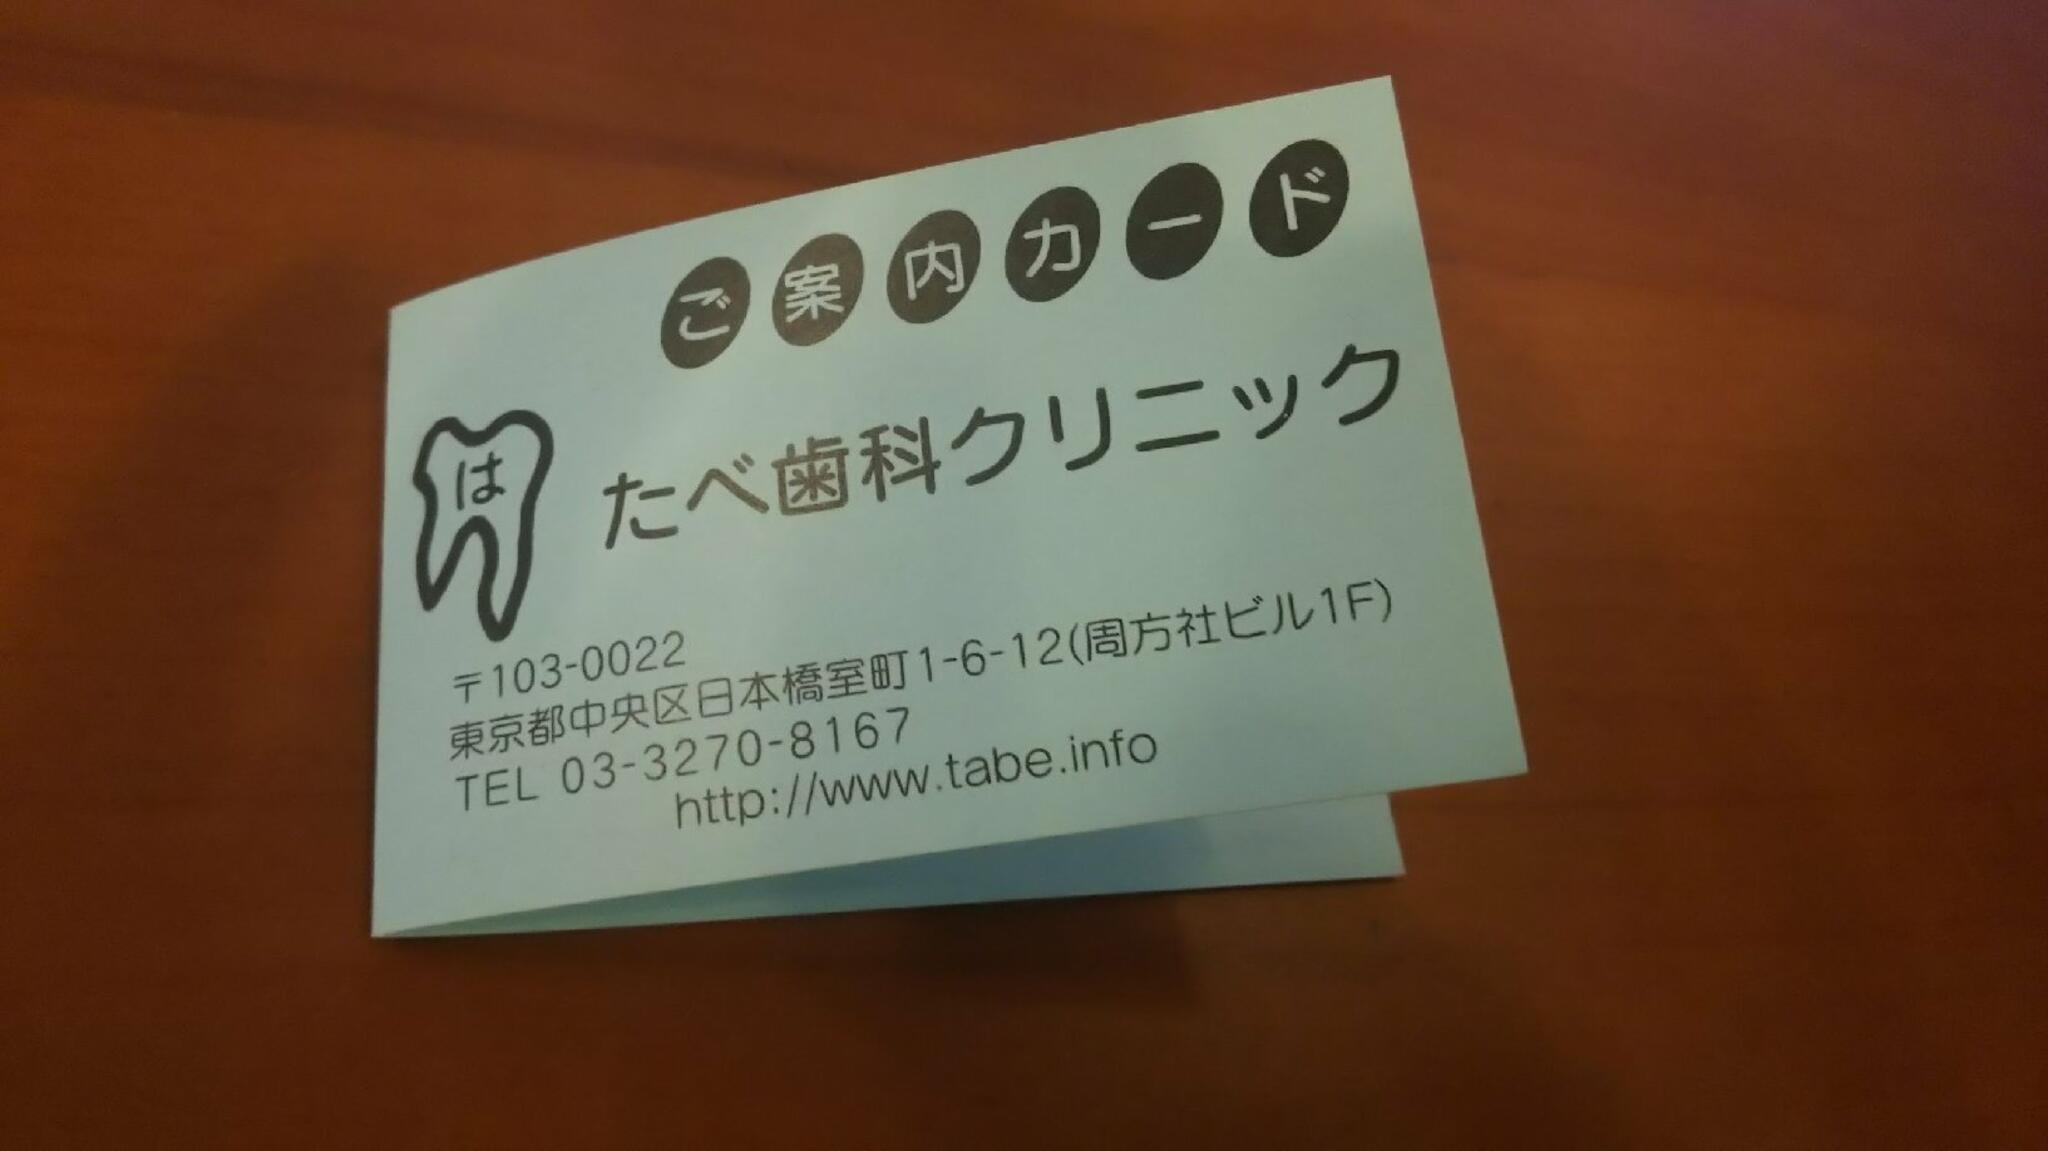 たべ歯科クリニックからのお知らせ(お休み終了)に関する写真